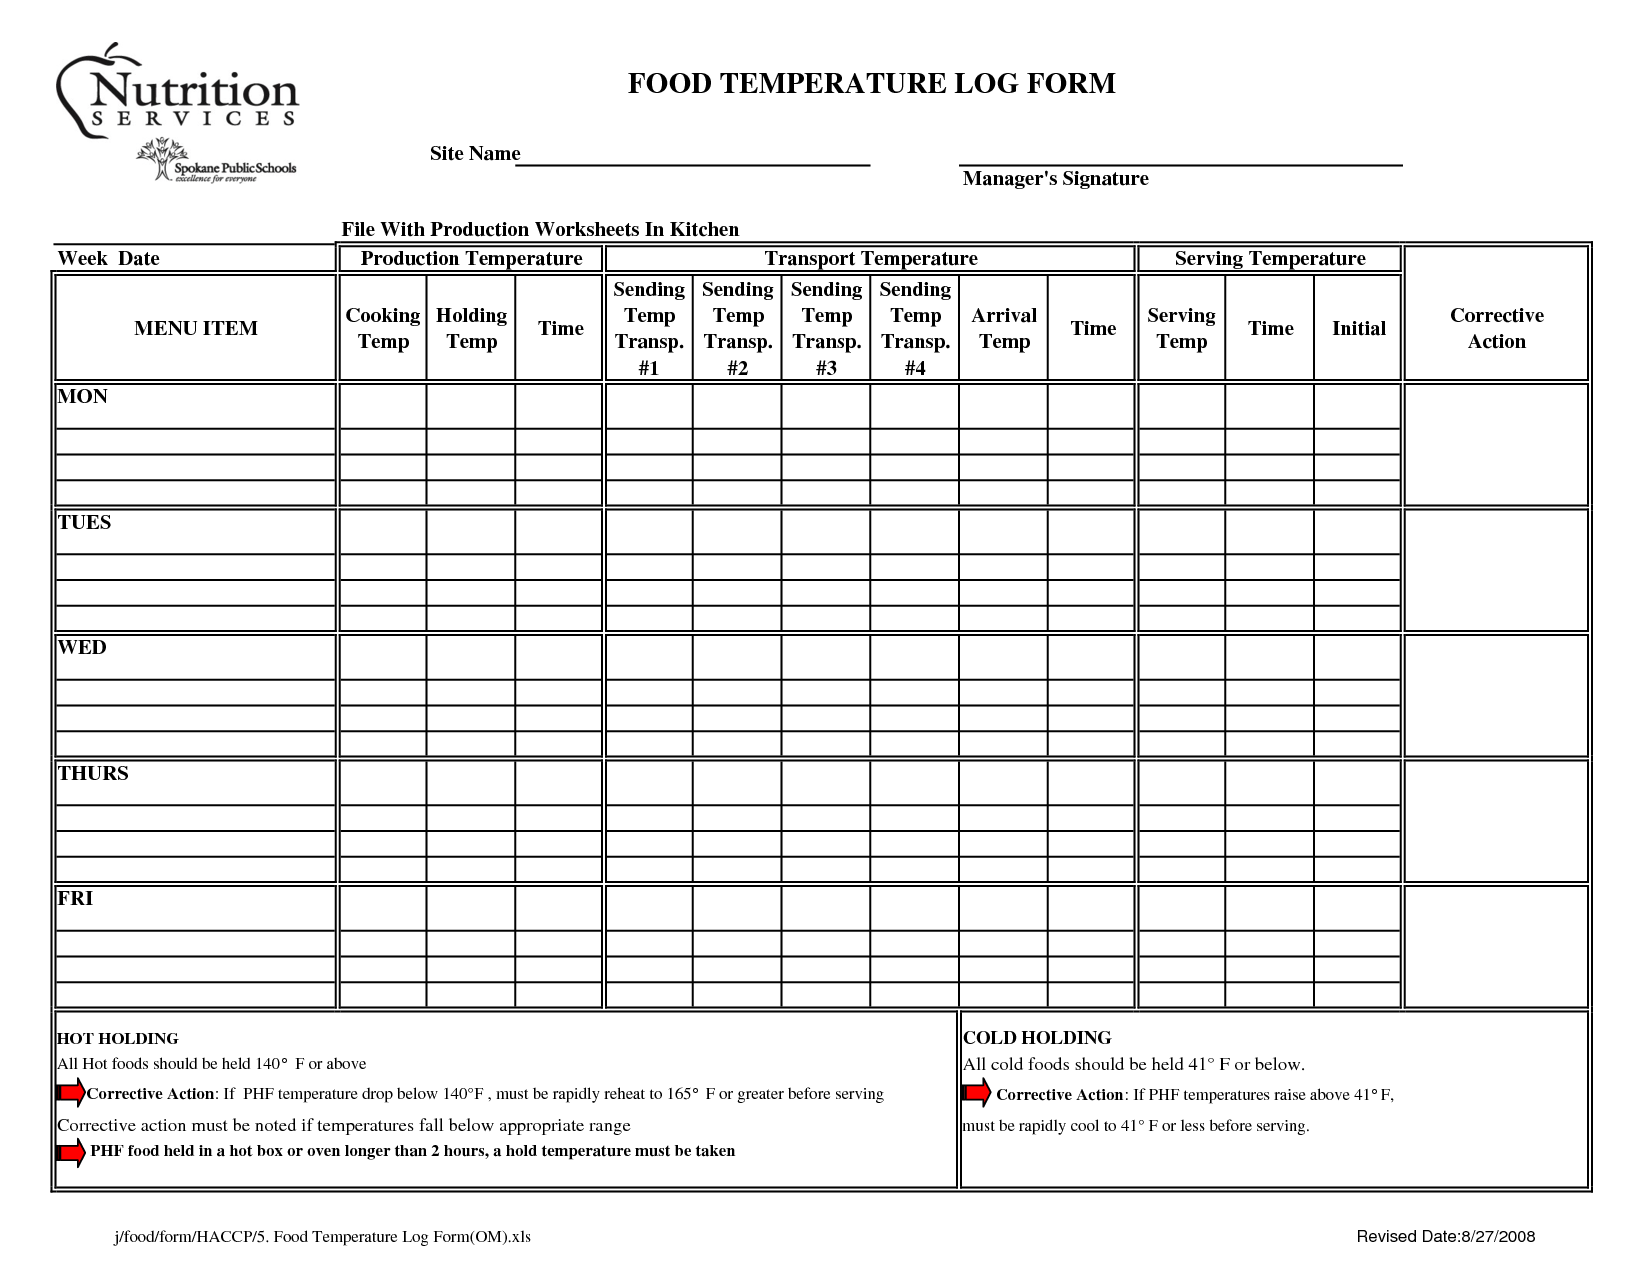 HACCP Food Temperature Log Sheet Image